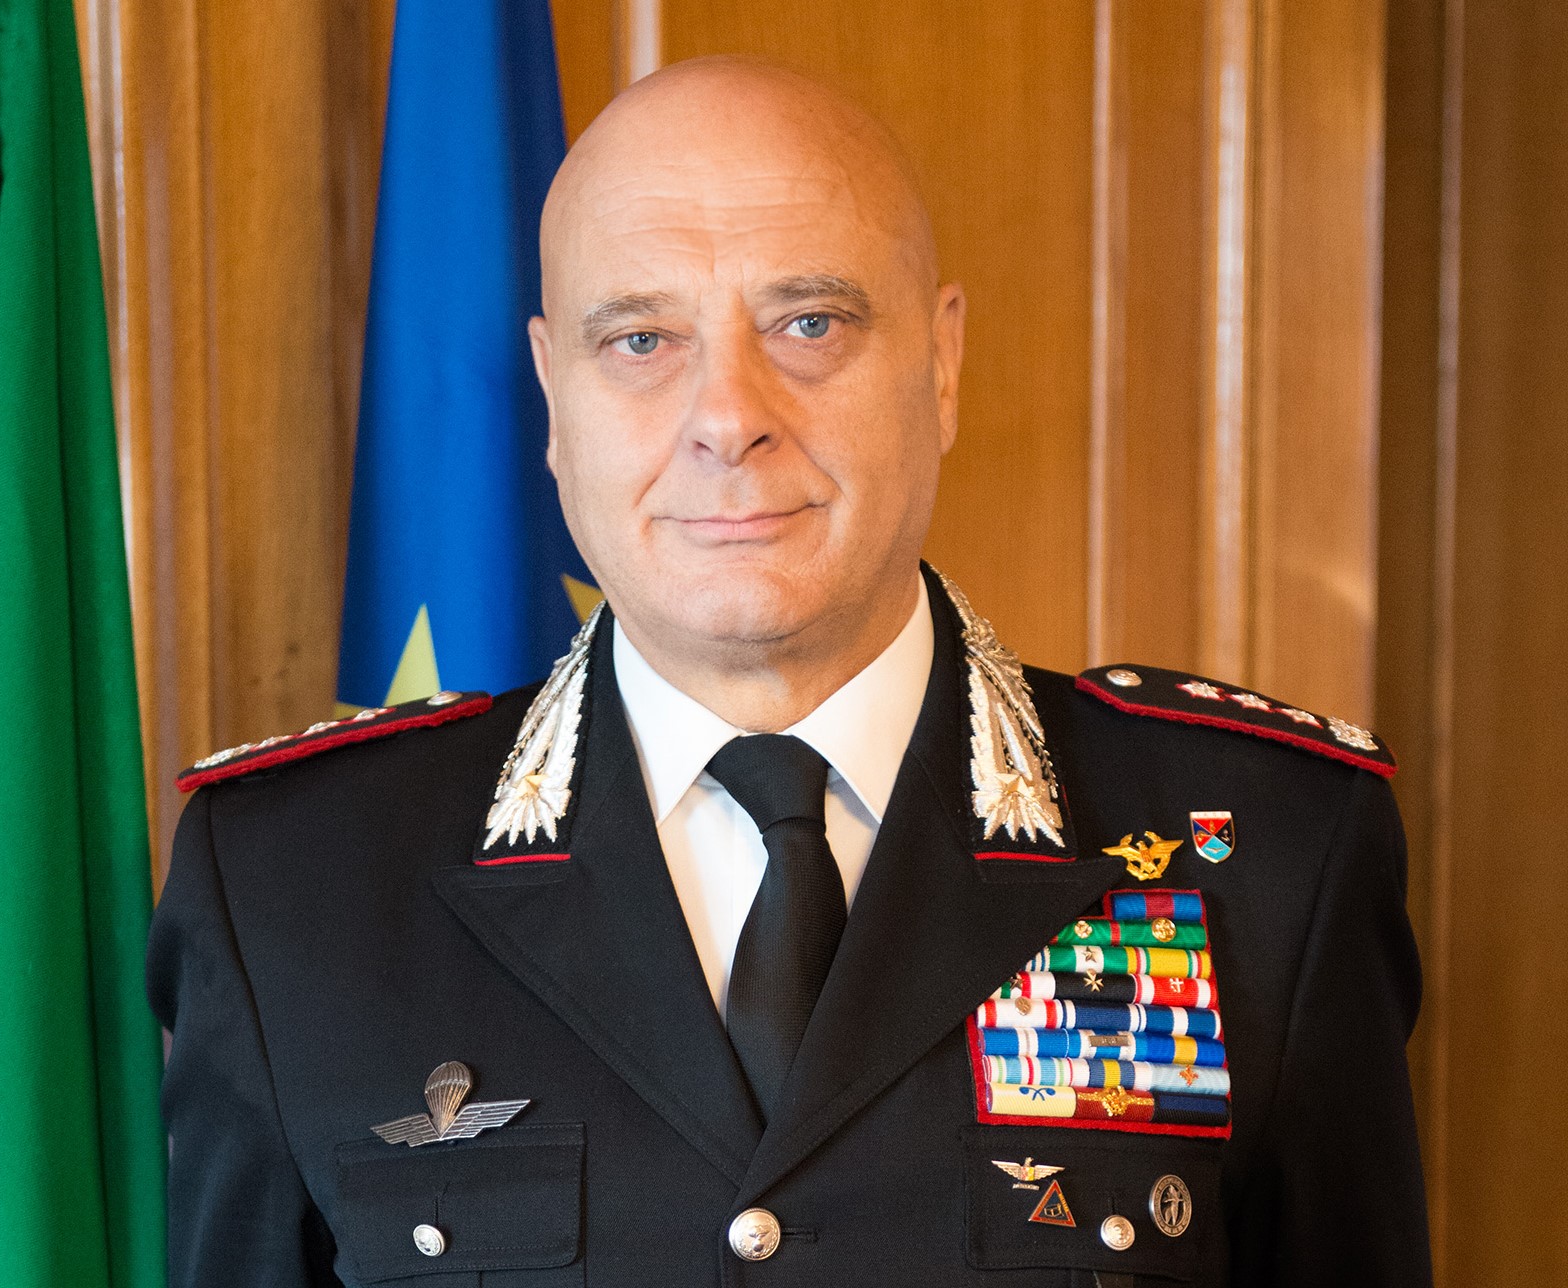 Vincenzo Coppola e il suo medagliere con cornice rossa, simbolo dell'Arma dei Carabinieri